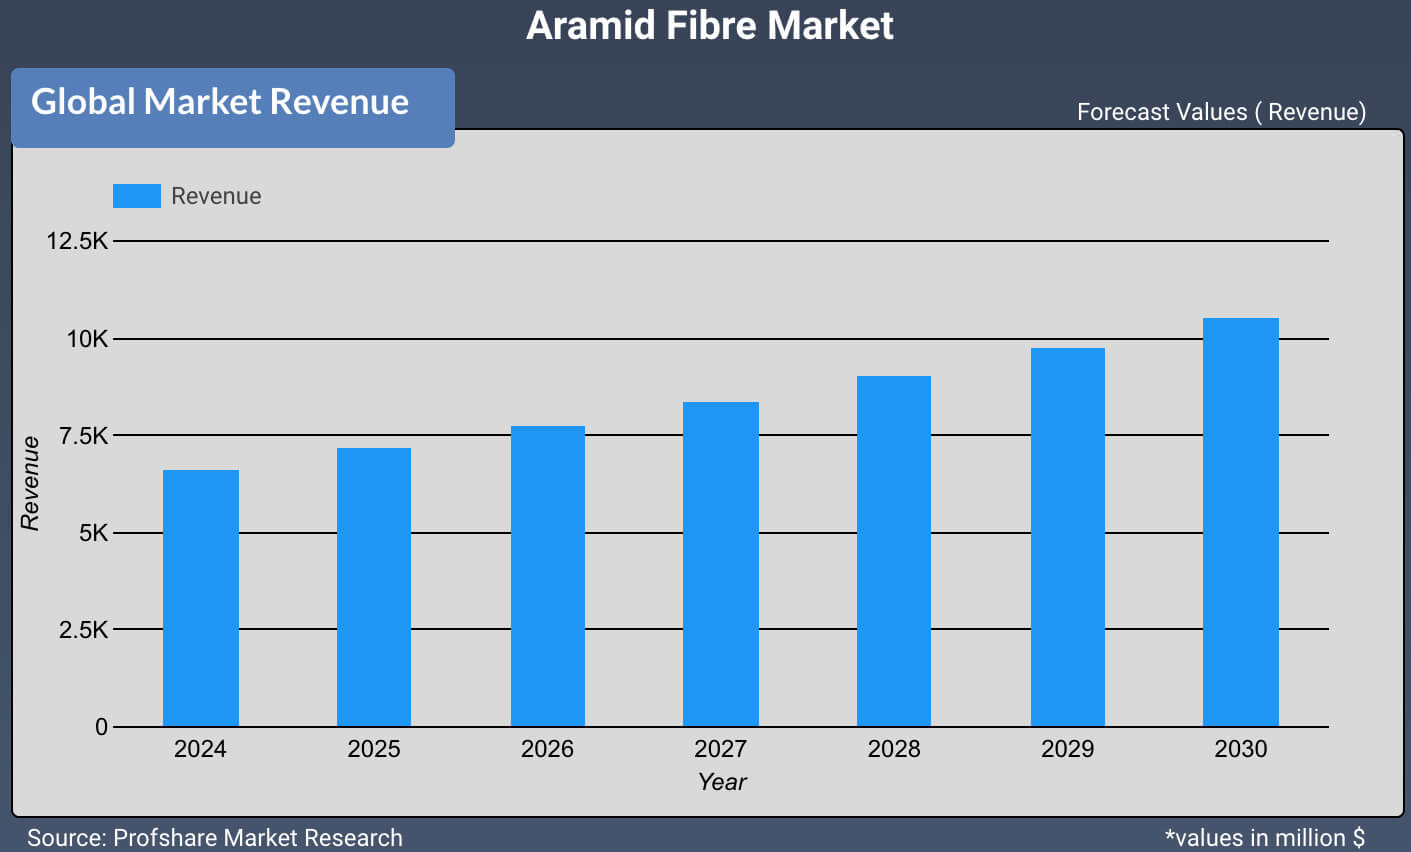 Aramid Fibre Market